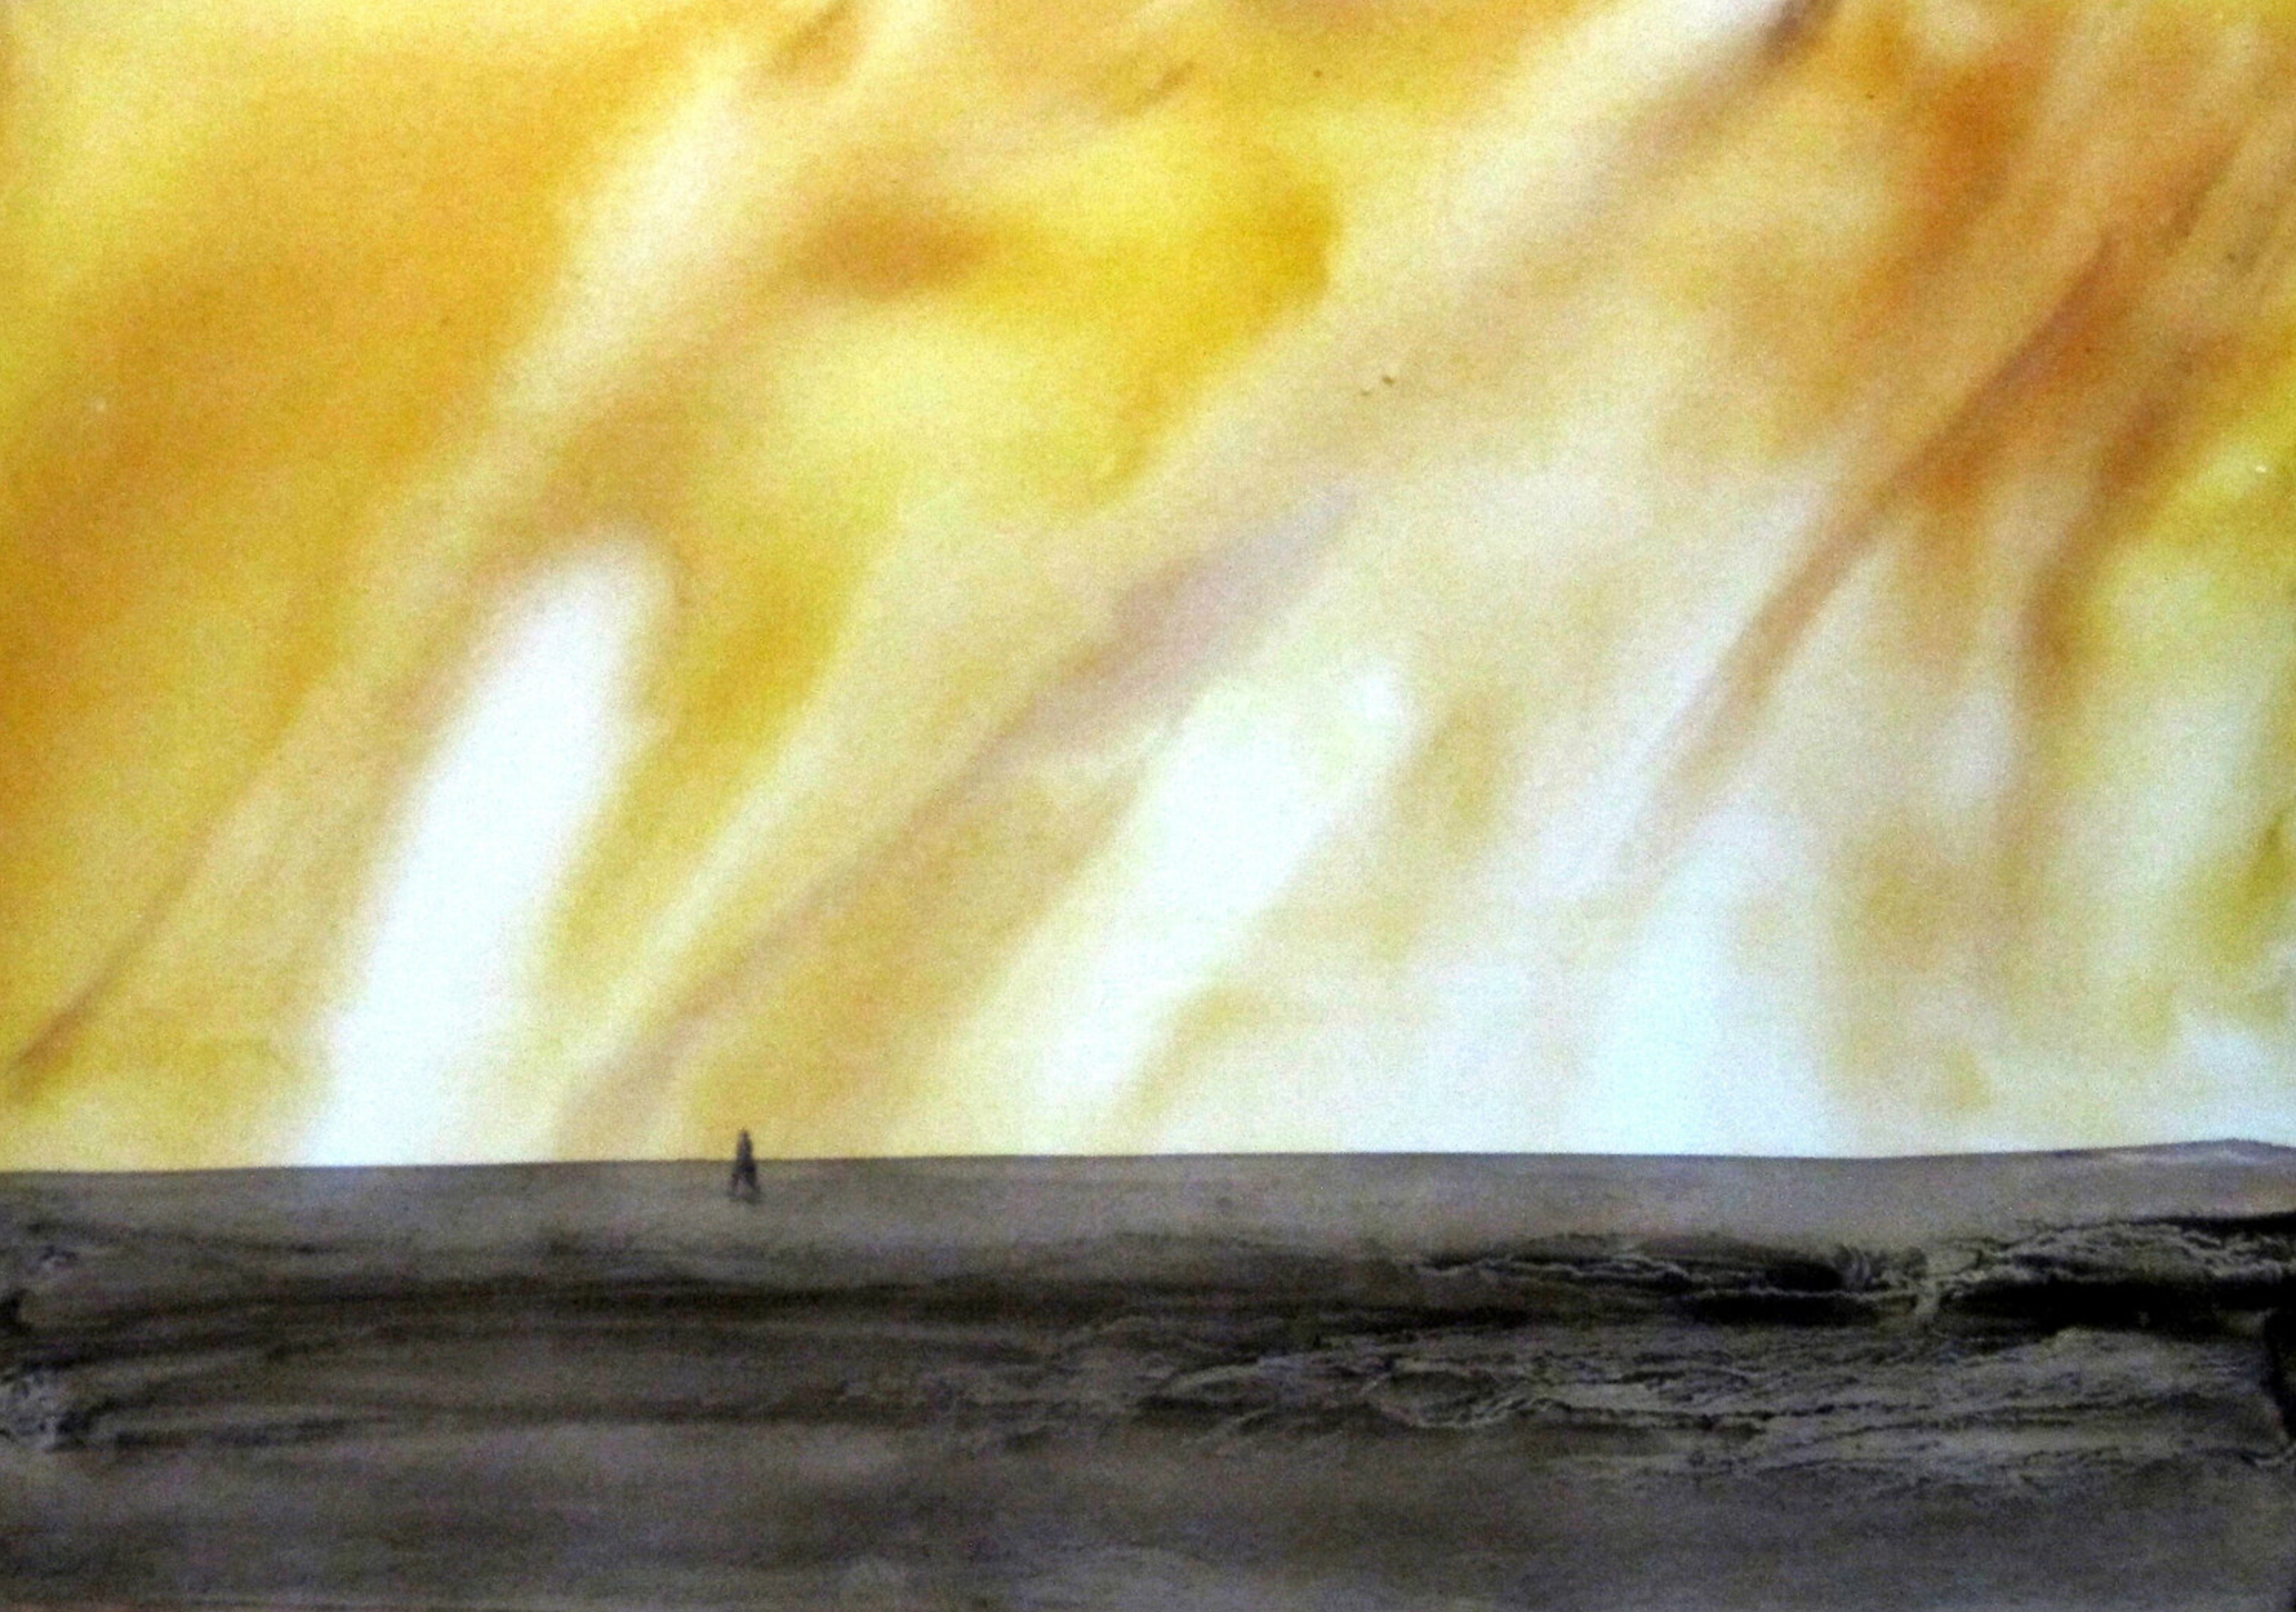 Le "Chemin aride" de Sylvia Baldeva présente un paysage peint à l'aquarelle. Paysage, ciel et terre, lumière, chaleur, silhouette, symbolisme. Aquarelle sur papier Canson®. Couleur jaune, gris, noir.